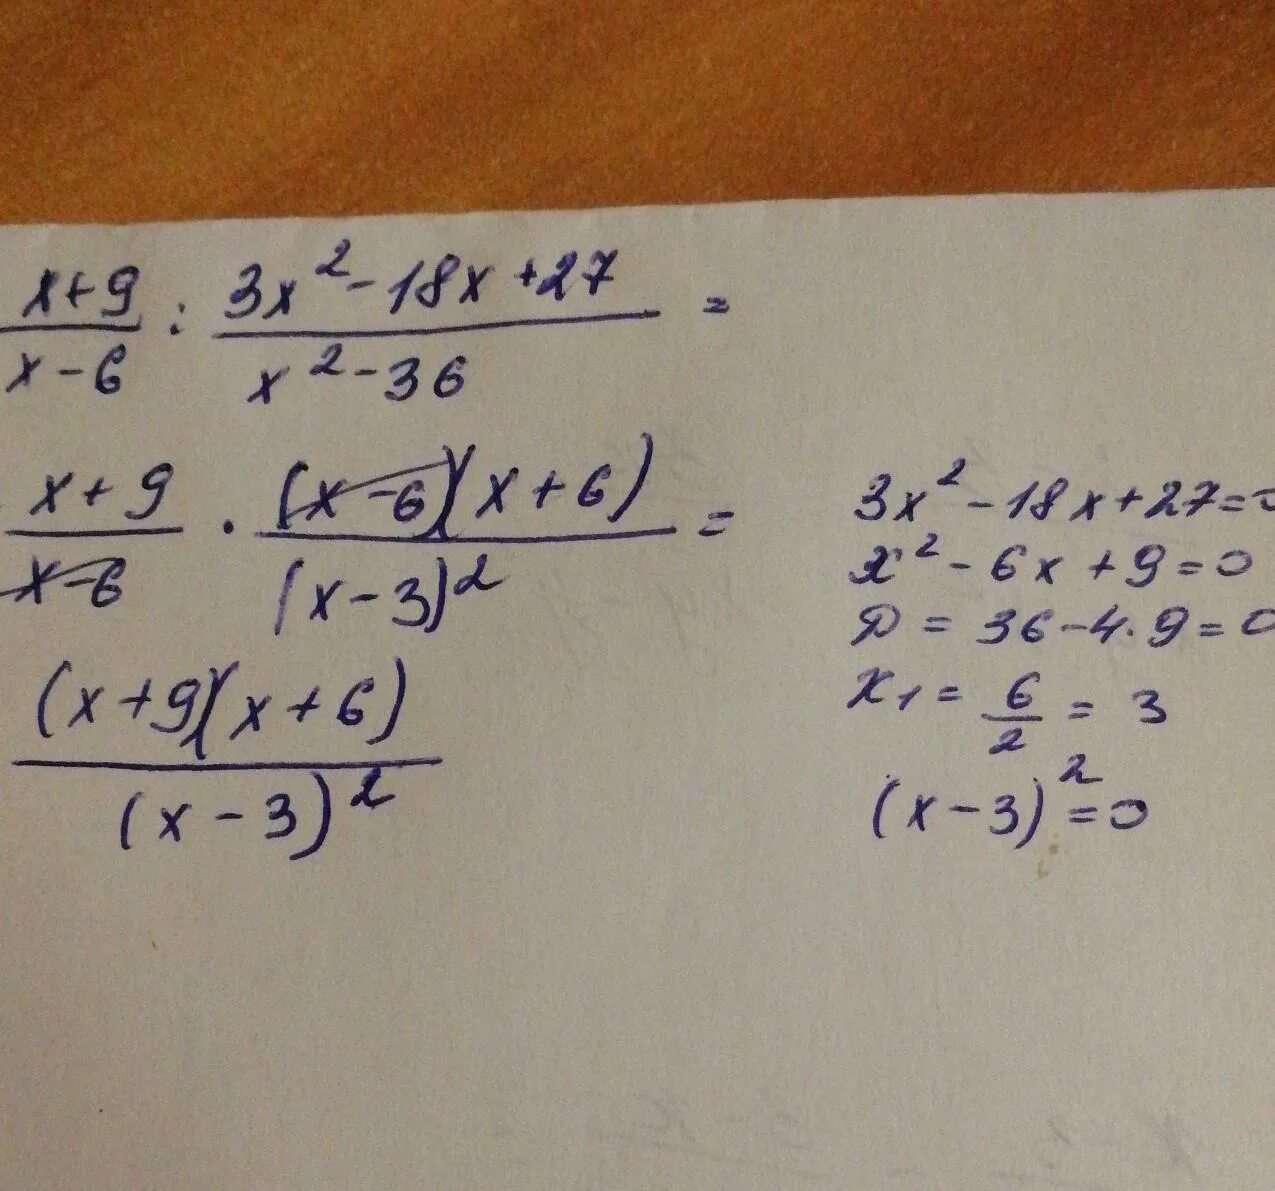 3x 27 x 0. Упростить выражение x2-9/x-6 2 - 27 6x-x 2. X-9/x2-9 3/3x-x2 упростите выражение. 3/X+3+3/x2-3x+2x/9-x2 упростите выражение. X^3-9x^2+27x-27.